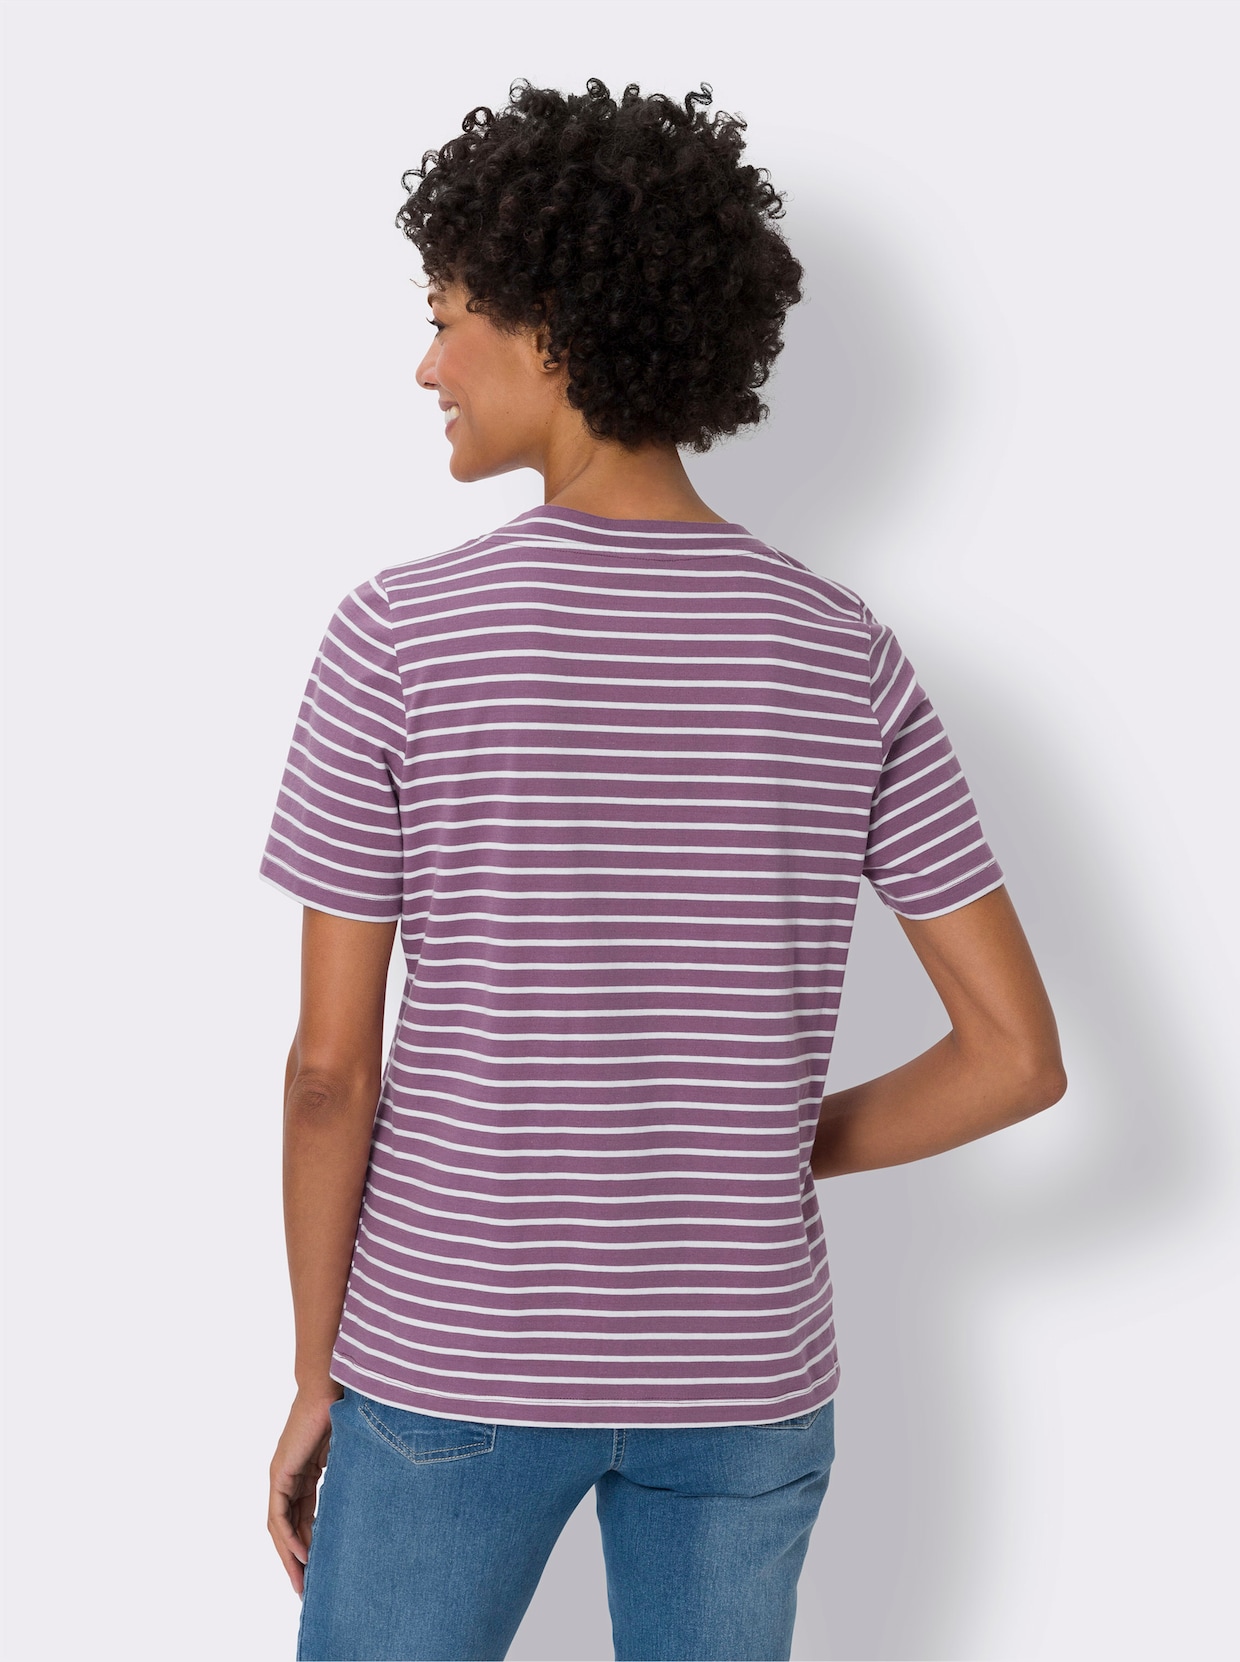 Tričko s krátkým rukávem - fialová-ecru-proužek